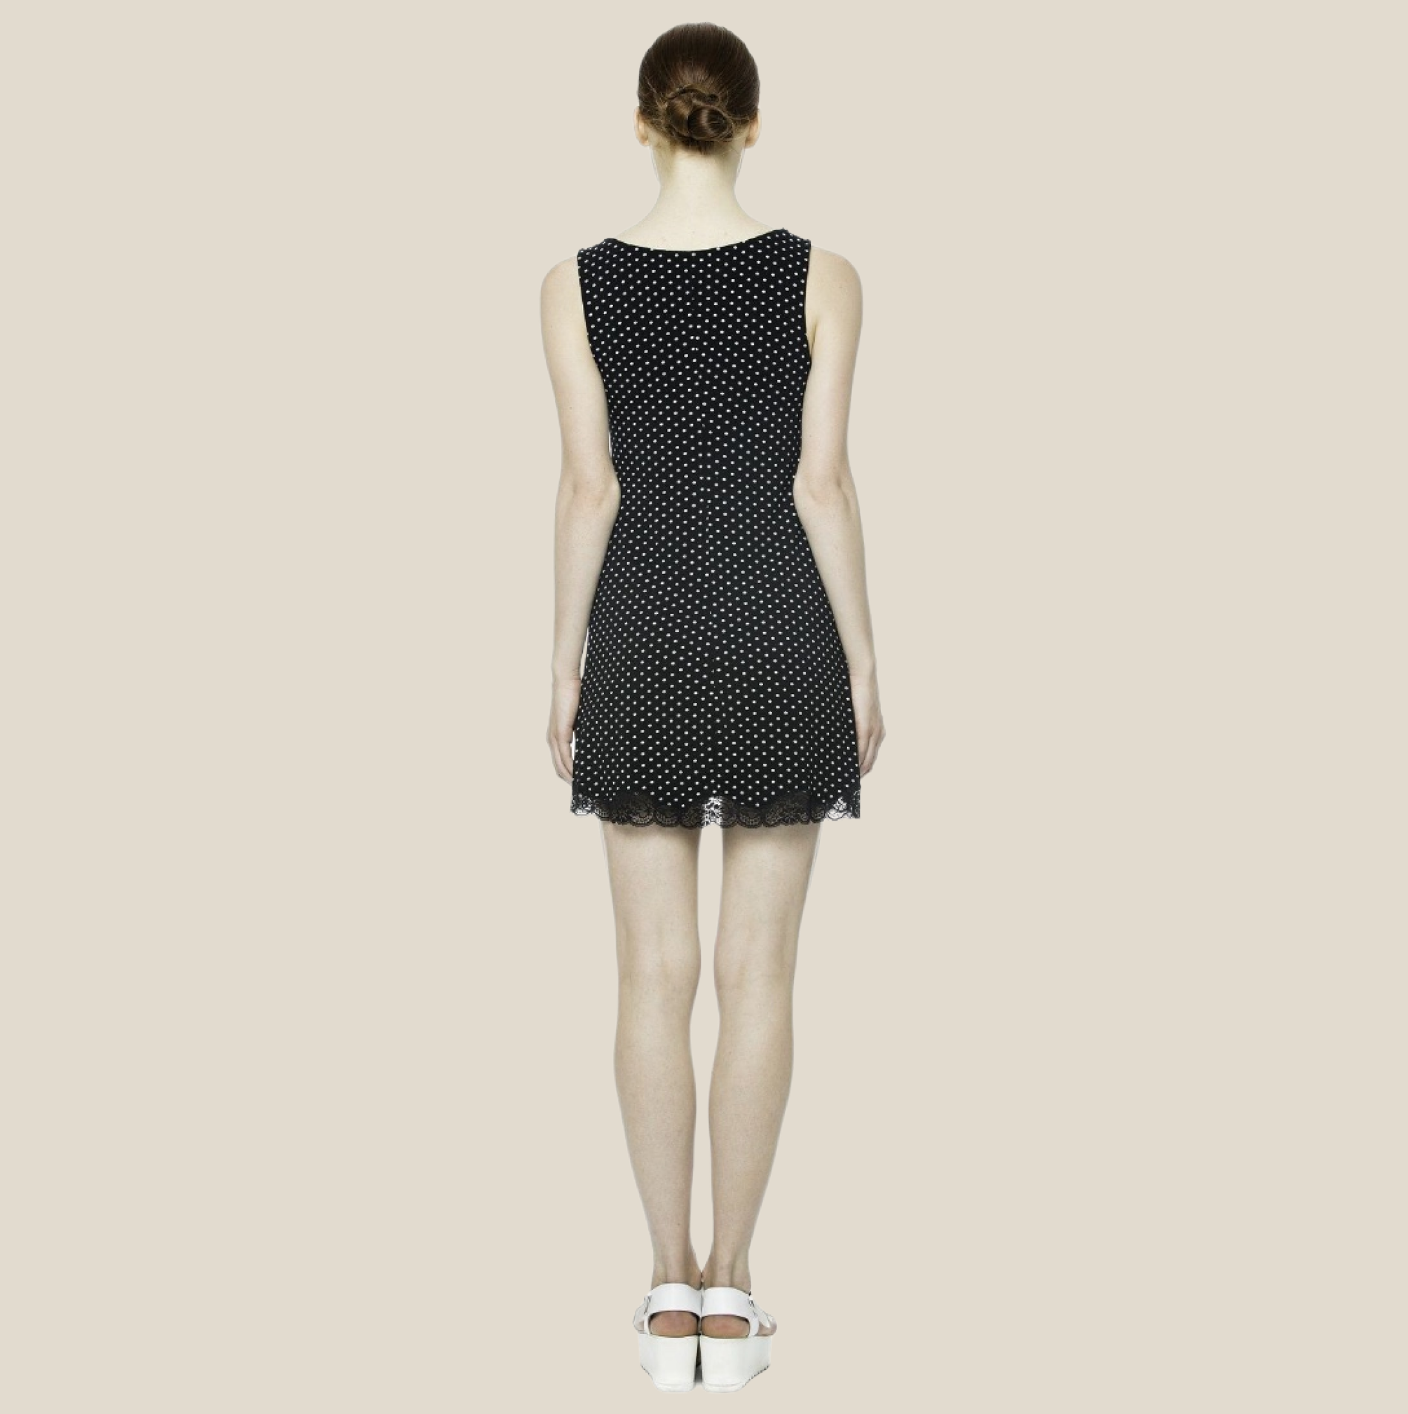 Black Polka Dot Stretch Jersey Vest Style Nightdress by Pepita Size 8 & 10